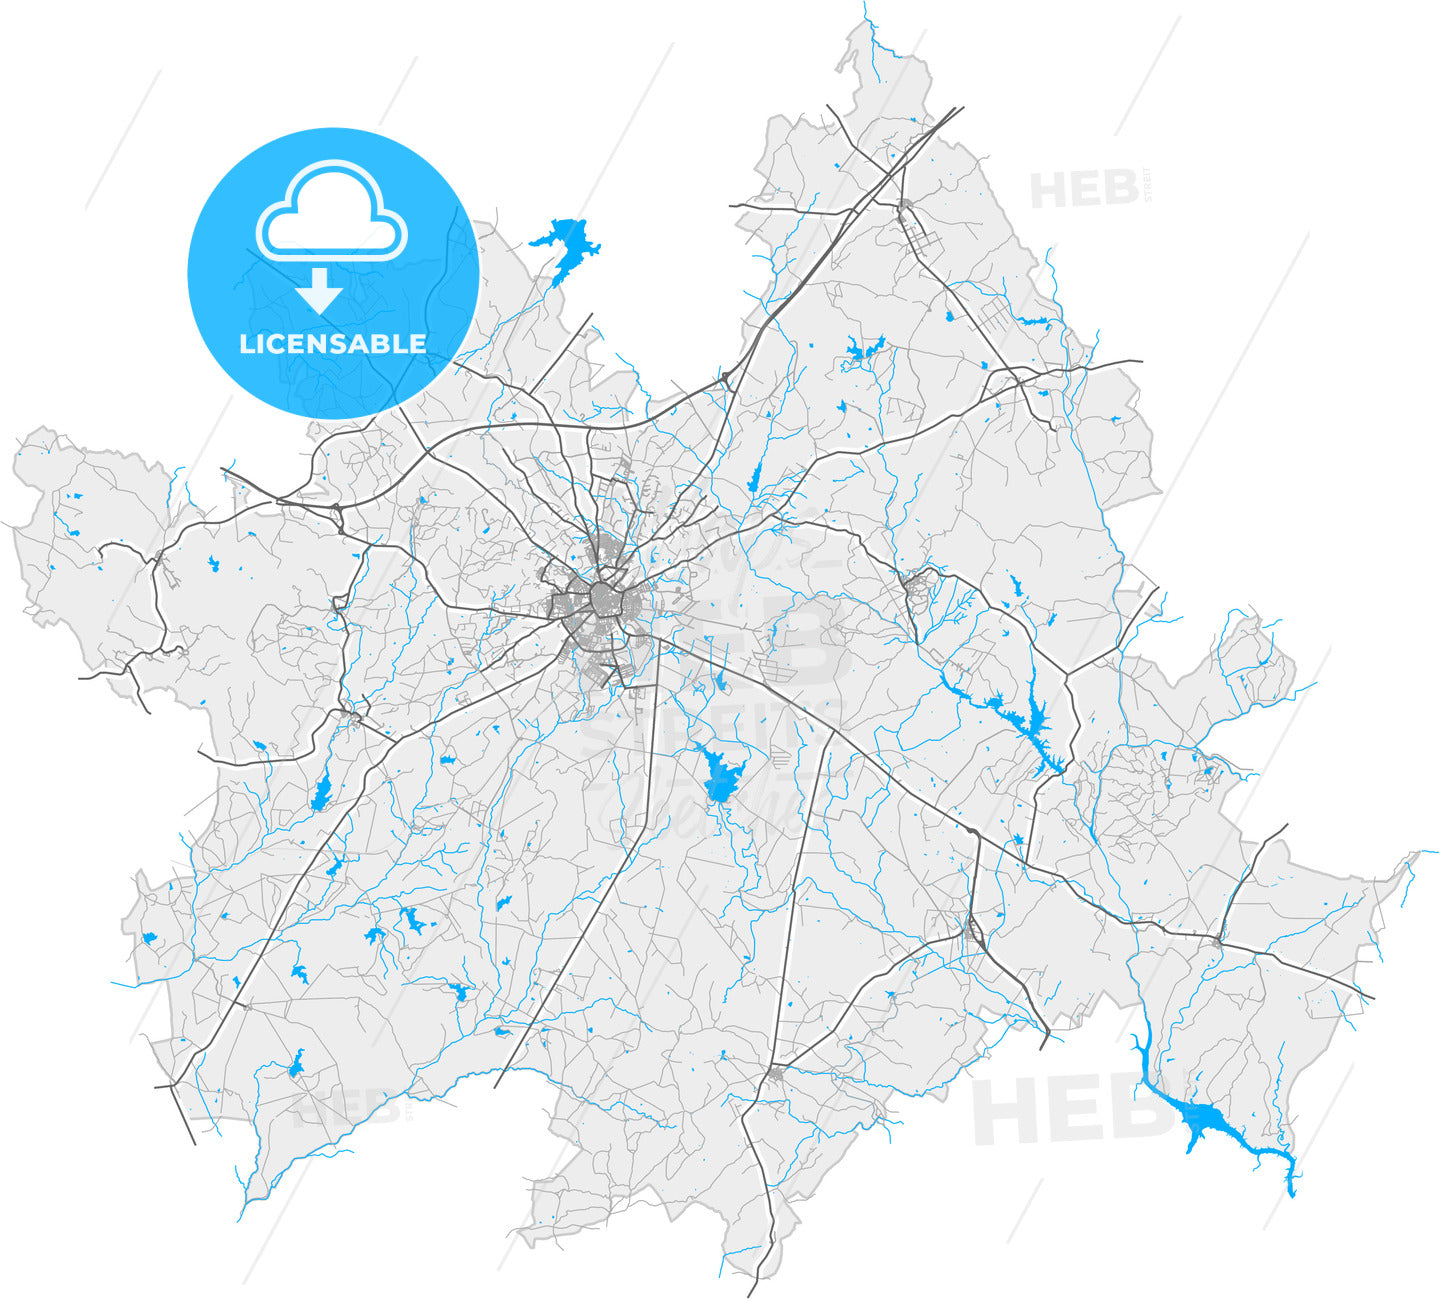 Évora, Évora, Portugal, high quality vector map